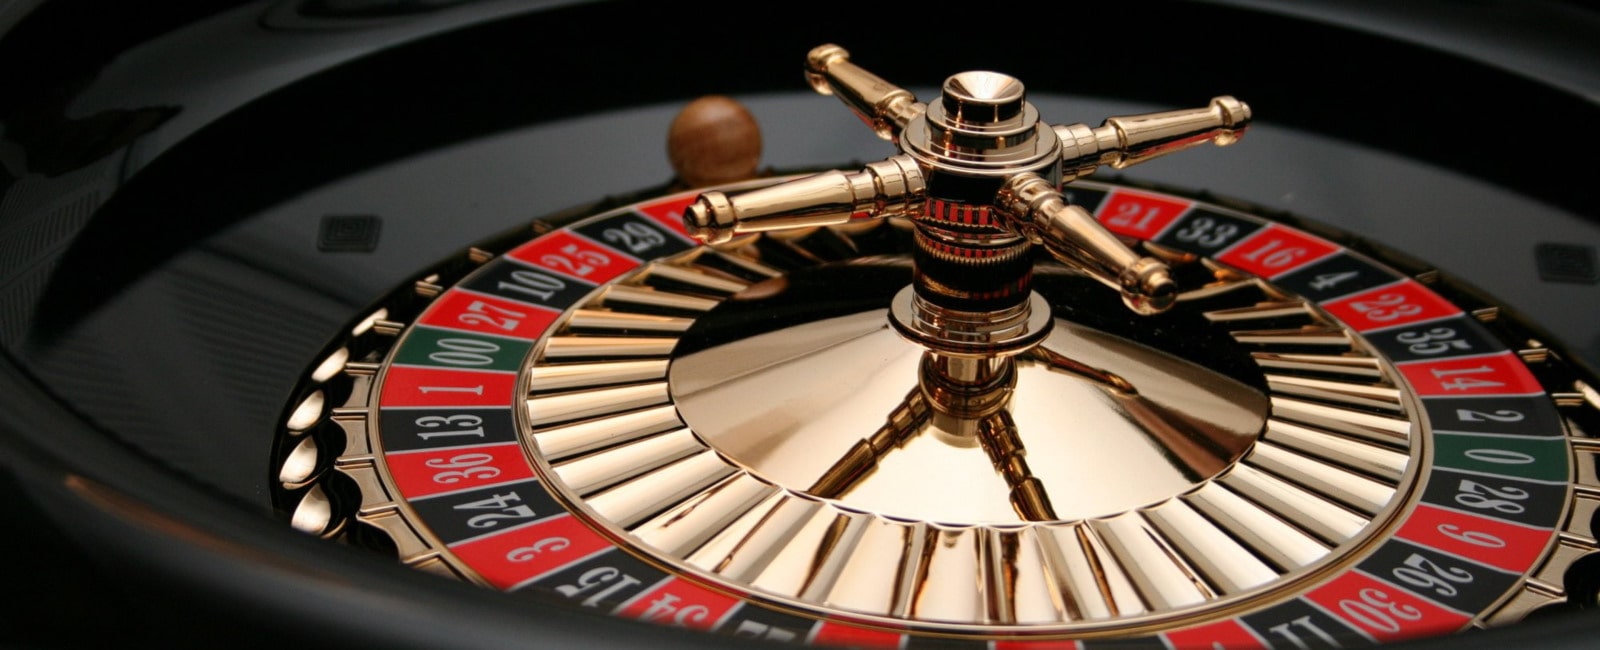 888 casino roulette maximum bet